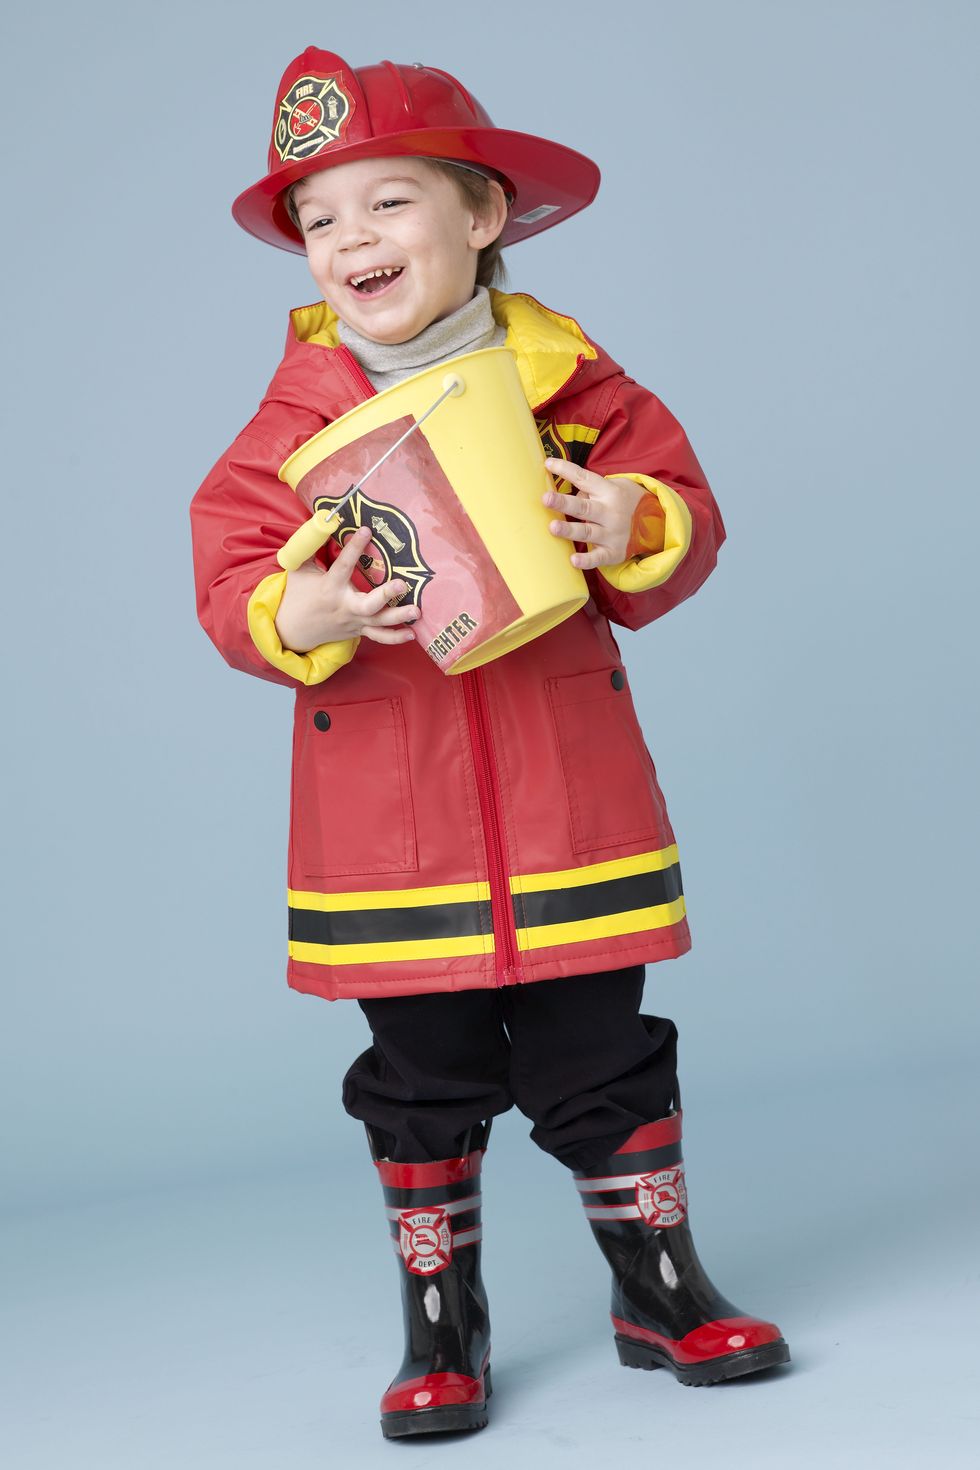 diy fireman costume for kids firefighter